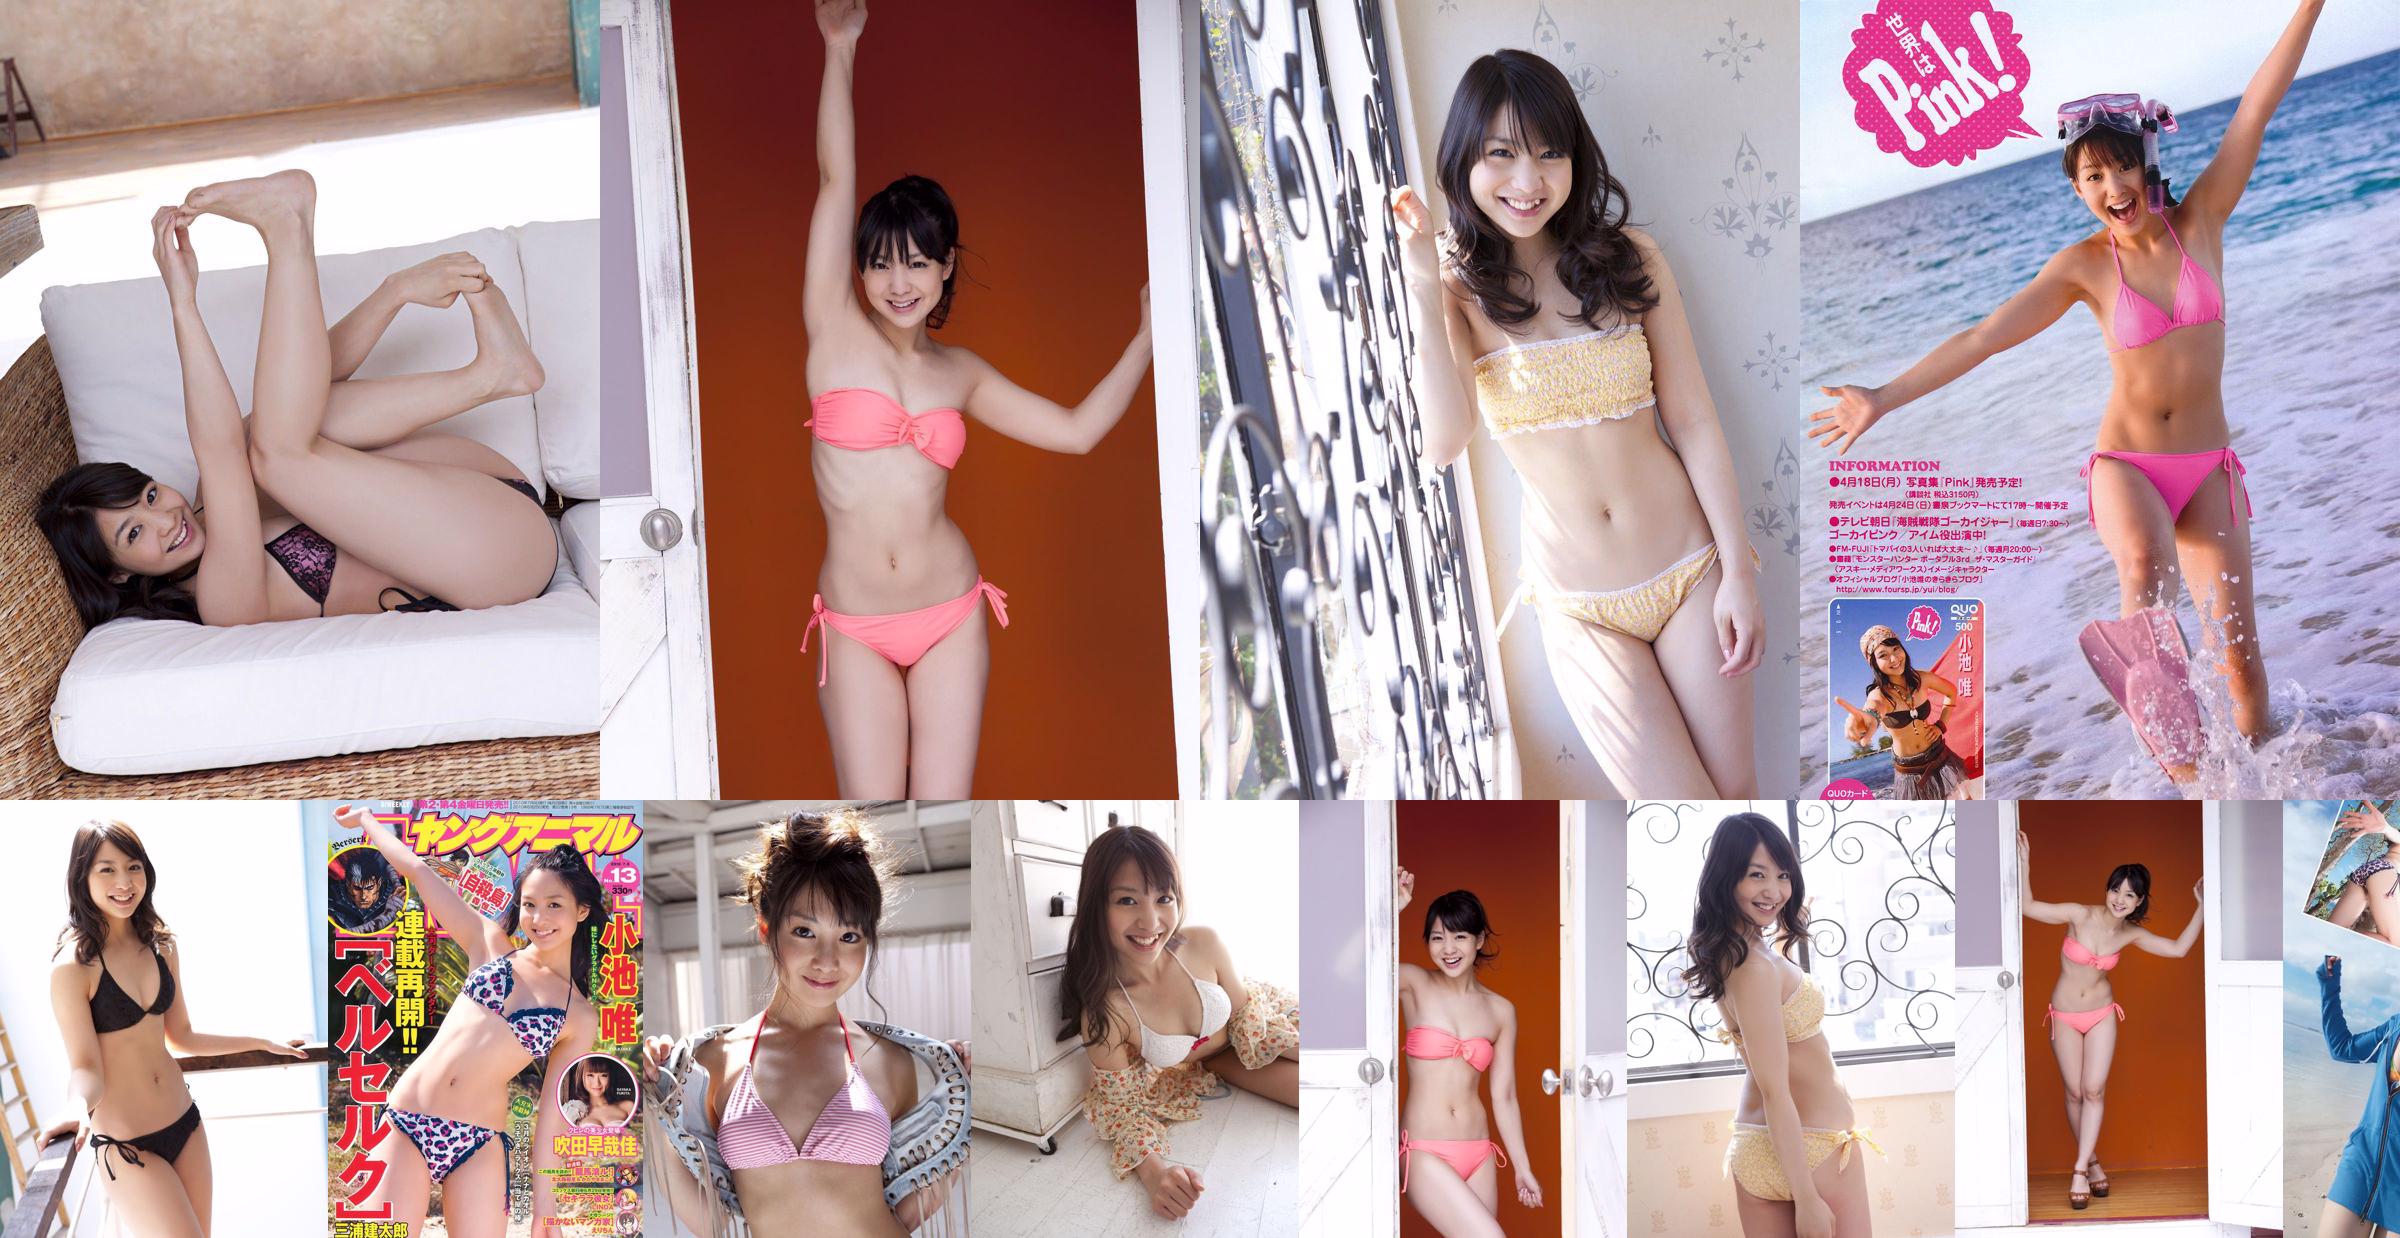 Yui Koike "FOREVER 21" [Sabra.net] Cover Girl No.608cd4 หน้า 9